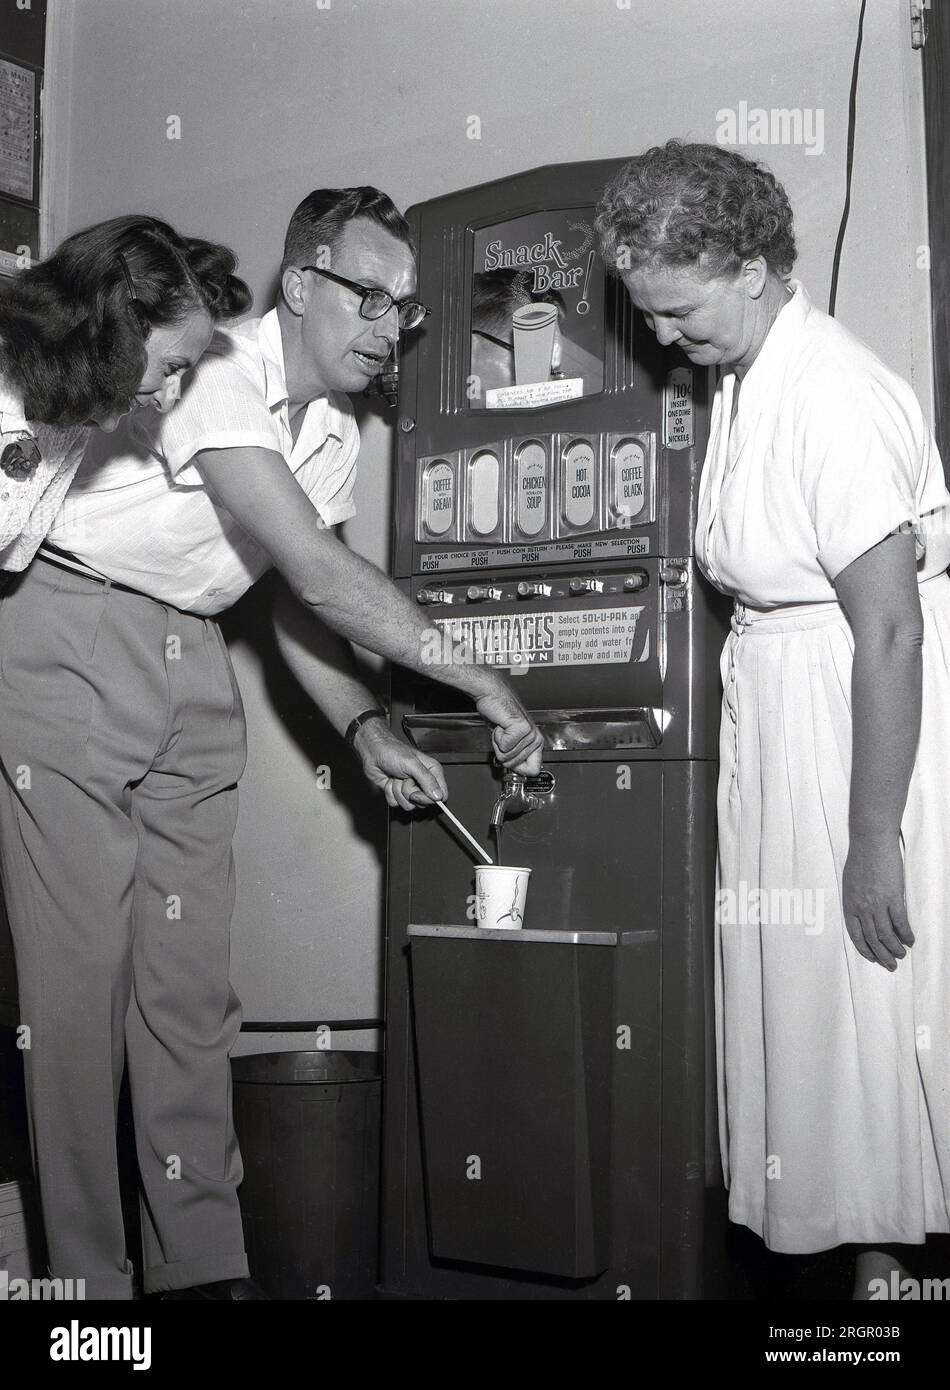 1950er, historisch, neuer Verkaufsautomat, „Snack Bar; USA. Getränke verfügbar, schwarzer Kaffee, Kaffee mit Sahne, heiße Coca & Chicken Bouillon Suppe. Jedes Heißgetränk kostet 10 Cent und man kann ein oder zwei Cent einstecken! Die erste kommerzielle Nutzung von Verkaufsautomaten wurde Ende der 1880er Jahre entwickelt, um Kaugummi auf Bahnhöfen zu verkaufen, wobei ab Anfang der 1900er Jahre alkoholfreie Getränke angeboten werden. Kaffee- und Heißgetränkehändler kamen seit den späten 1940er Jahren auf den Markt. Man sagt, dass der erste Automat von Hero Alexandria erfunden wurde, als er Weihwasser ausgab. Stockfoto